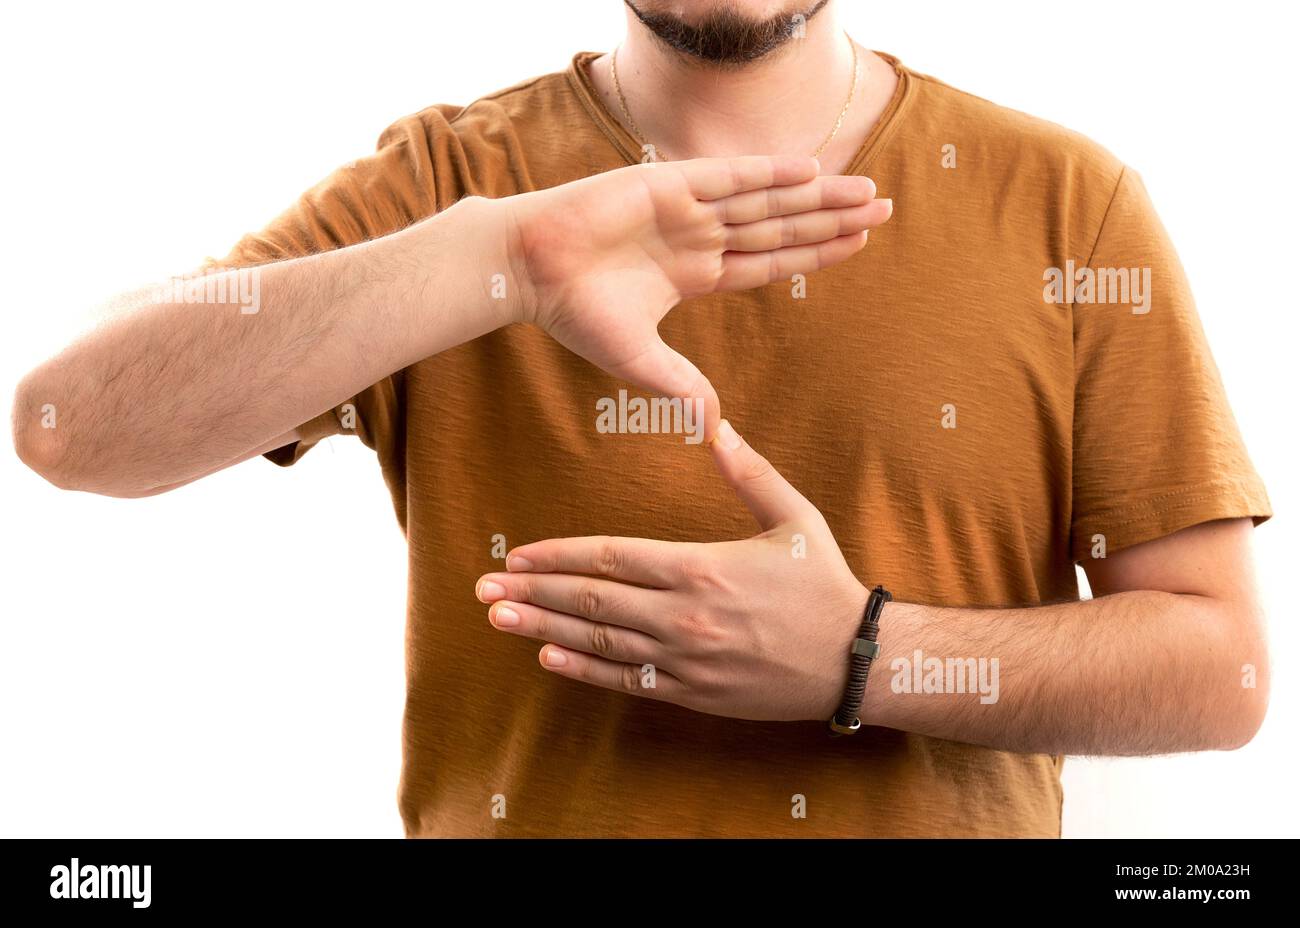 L'homme apprend la langue des signes pour parler. Gestes de main de personnes sourdes. Banque D'Images